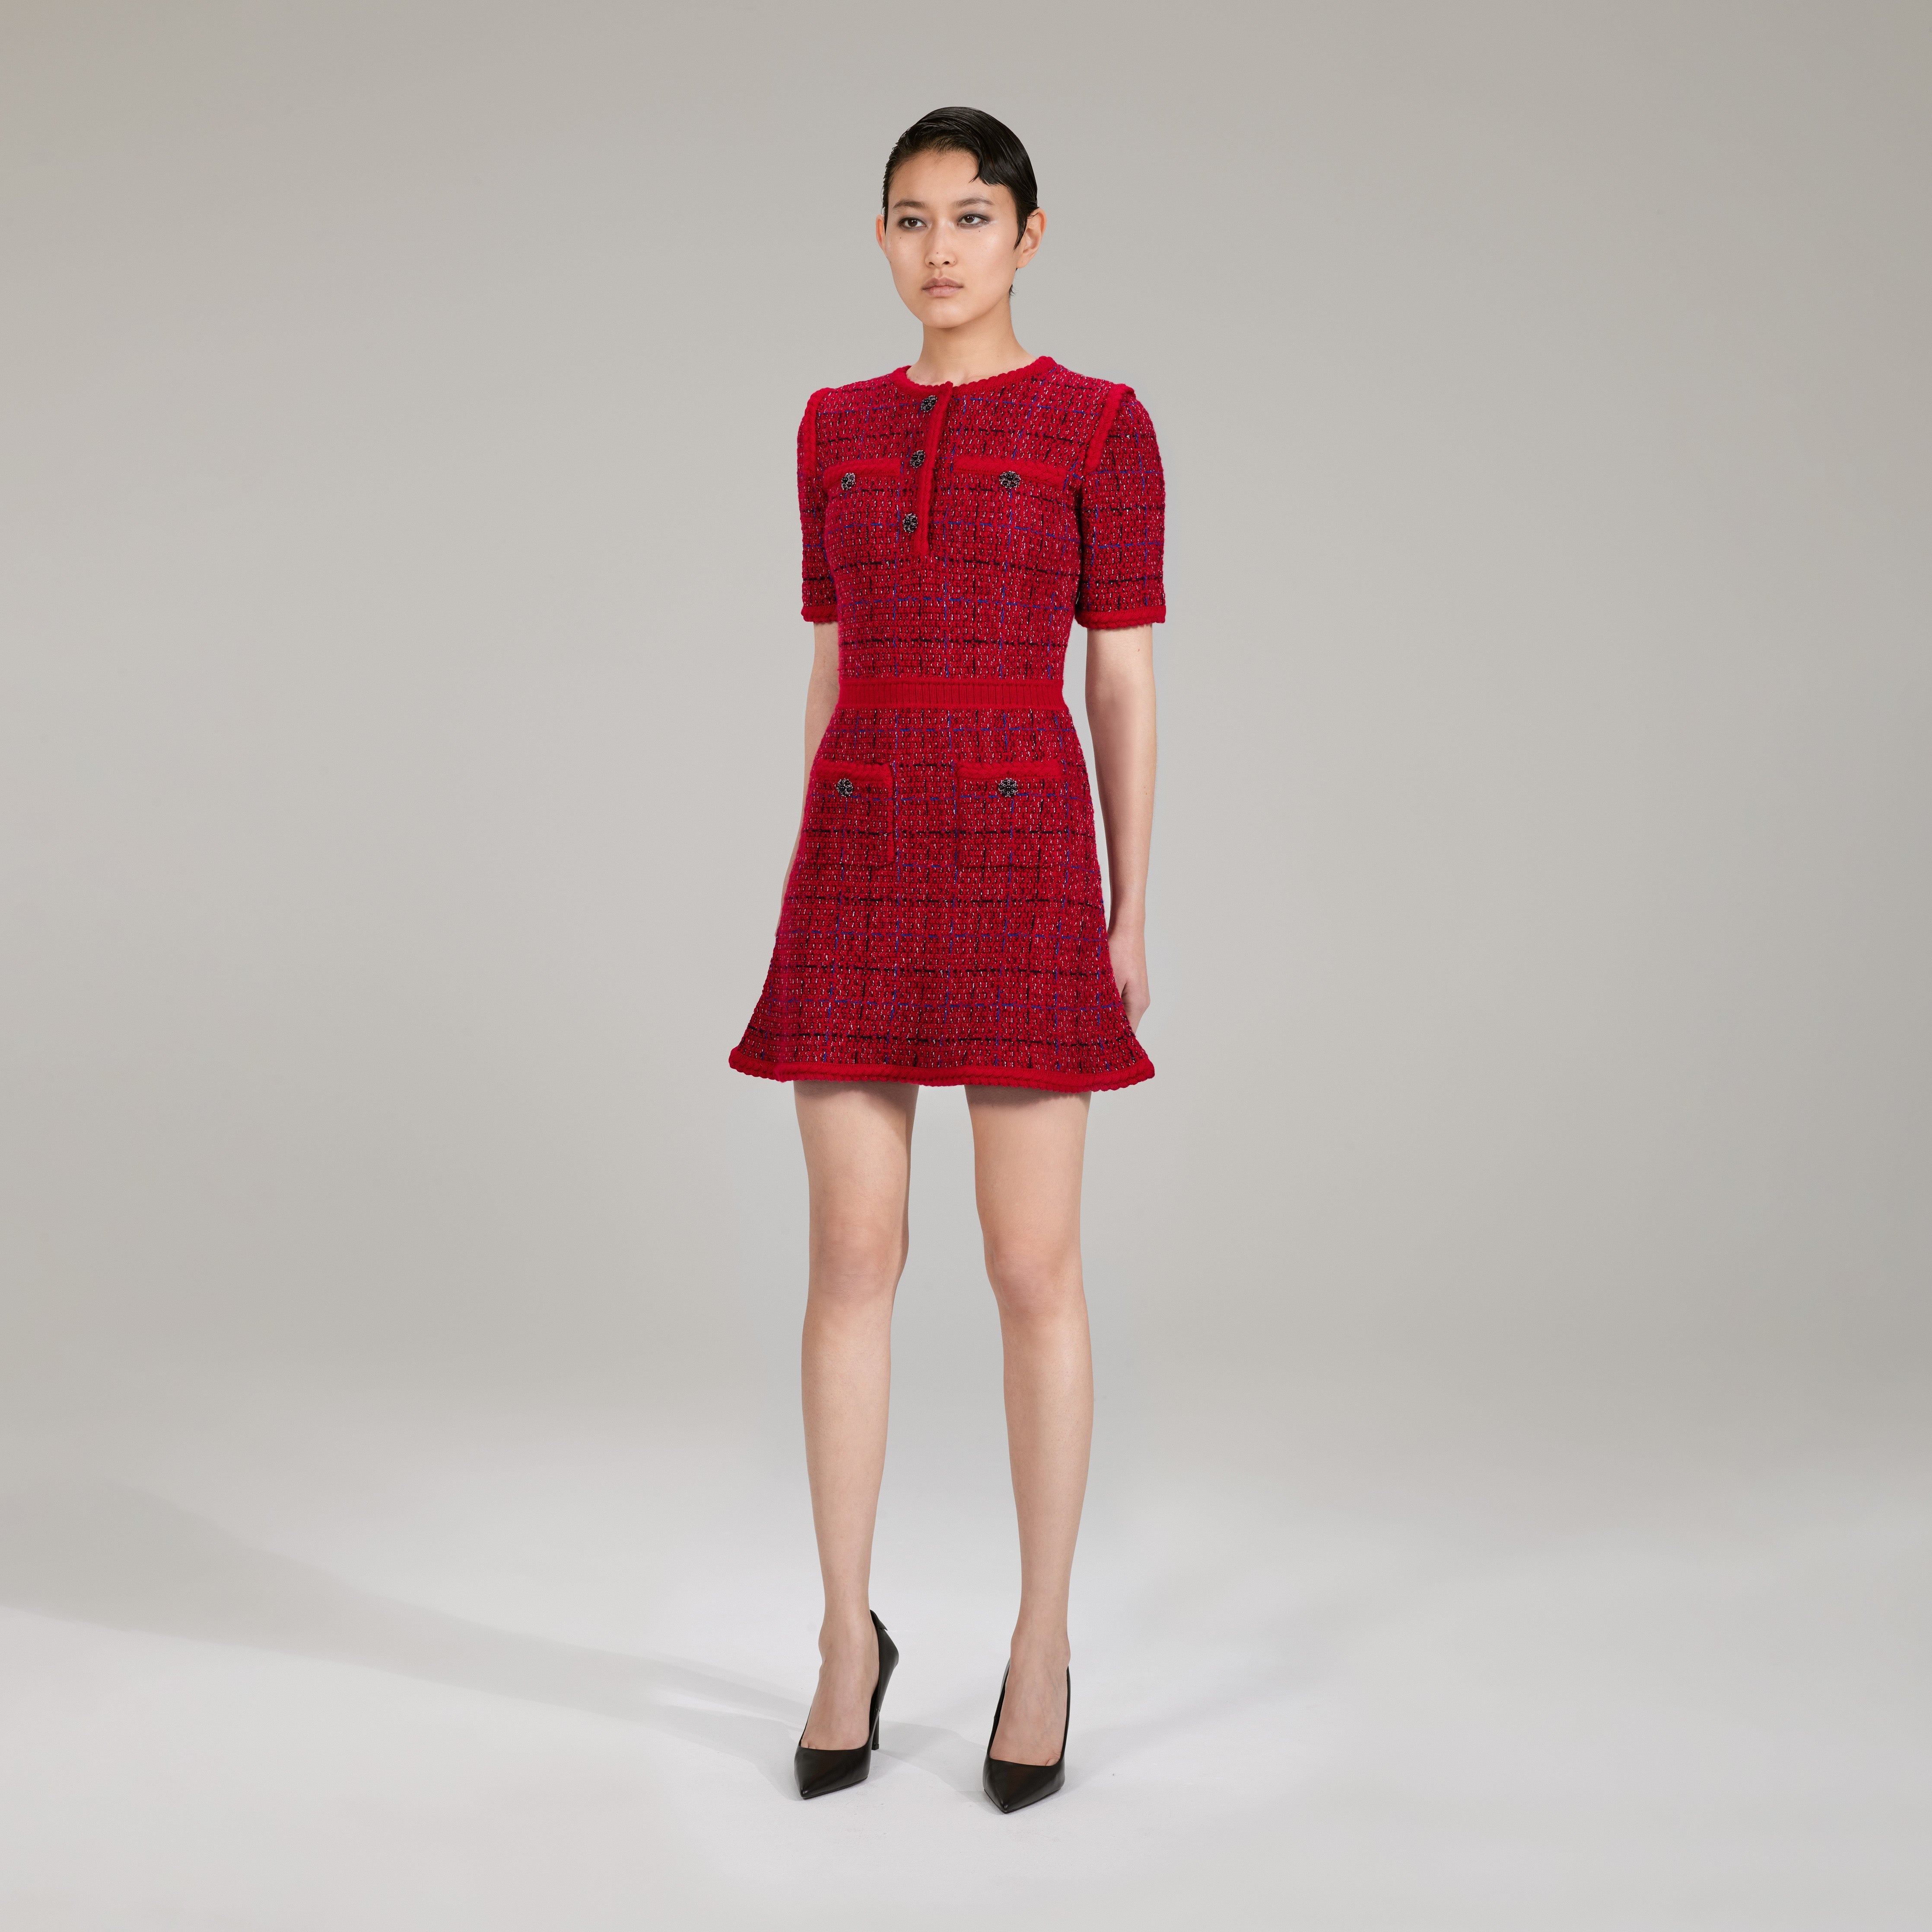 Red Melange Knit Dress